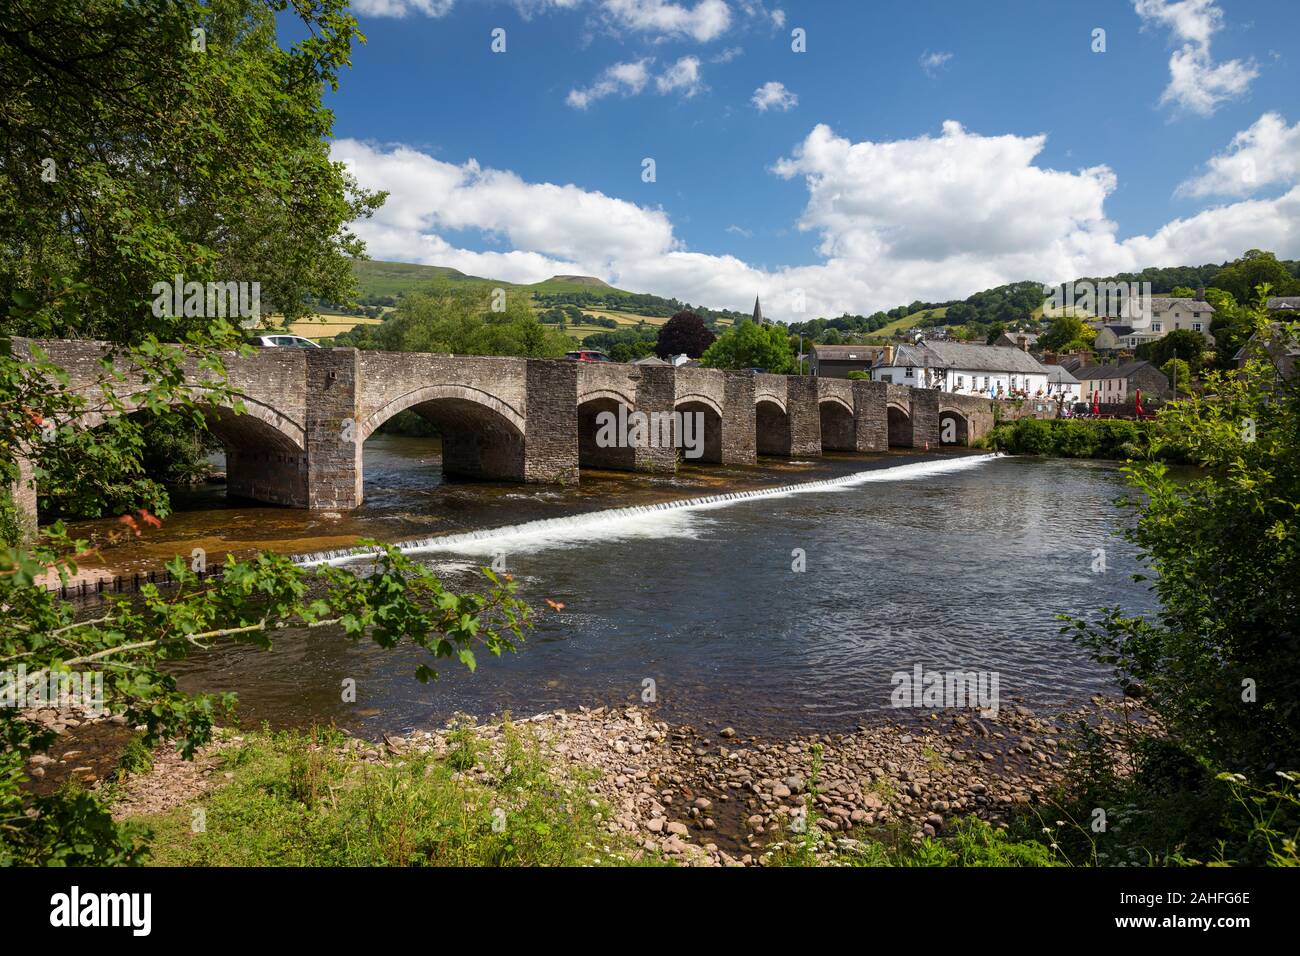 La rivière Usk et 18e siècle pont de pierre menant à Crickhowell, Powys, Wales Banque D'Images